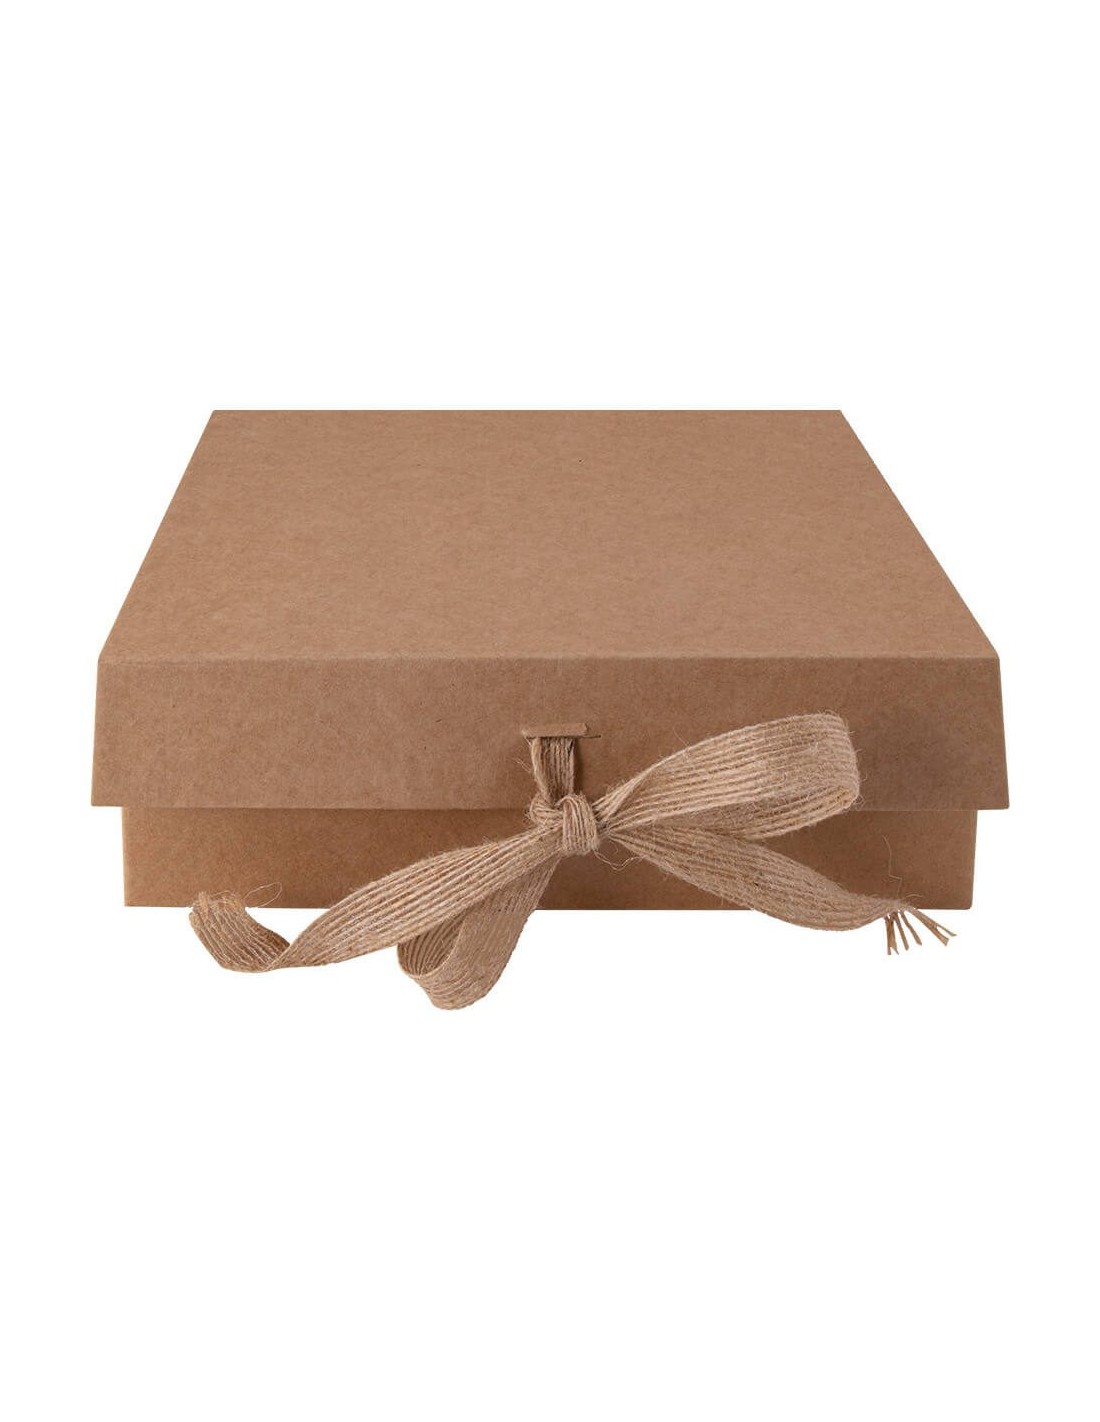 Caja de Cartón | Cajas y Bolsas Personalizadas